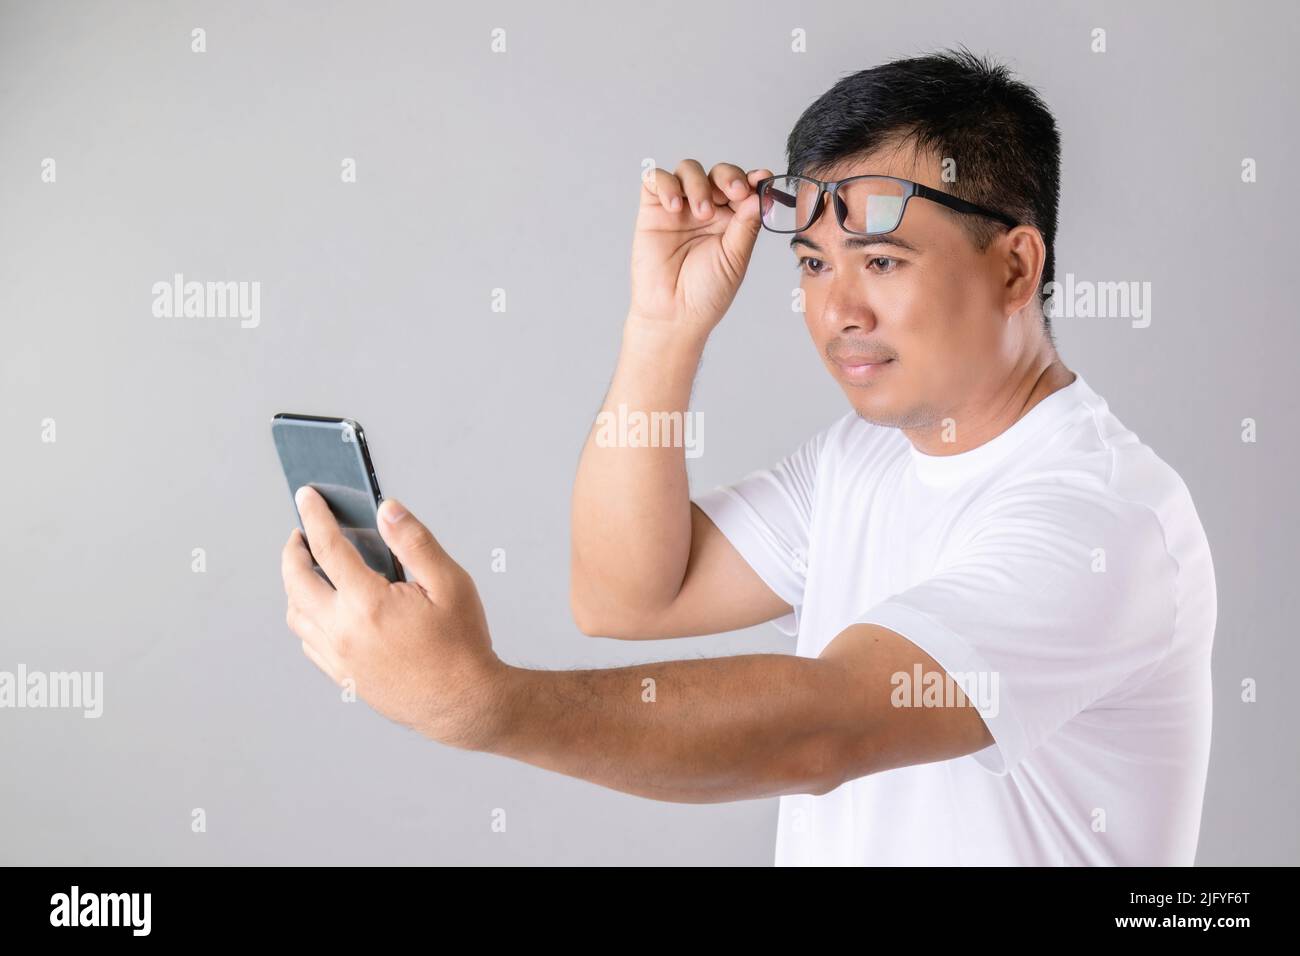 Kurz- oder Weitblick Konzept : Mann wering Brillen und versuchen, klar auf dem Smartphone im Studio auf grauem Hintergrund aufgenommen aussehen Stockfoto